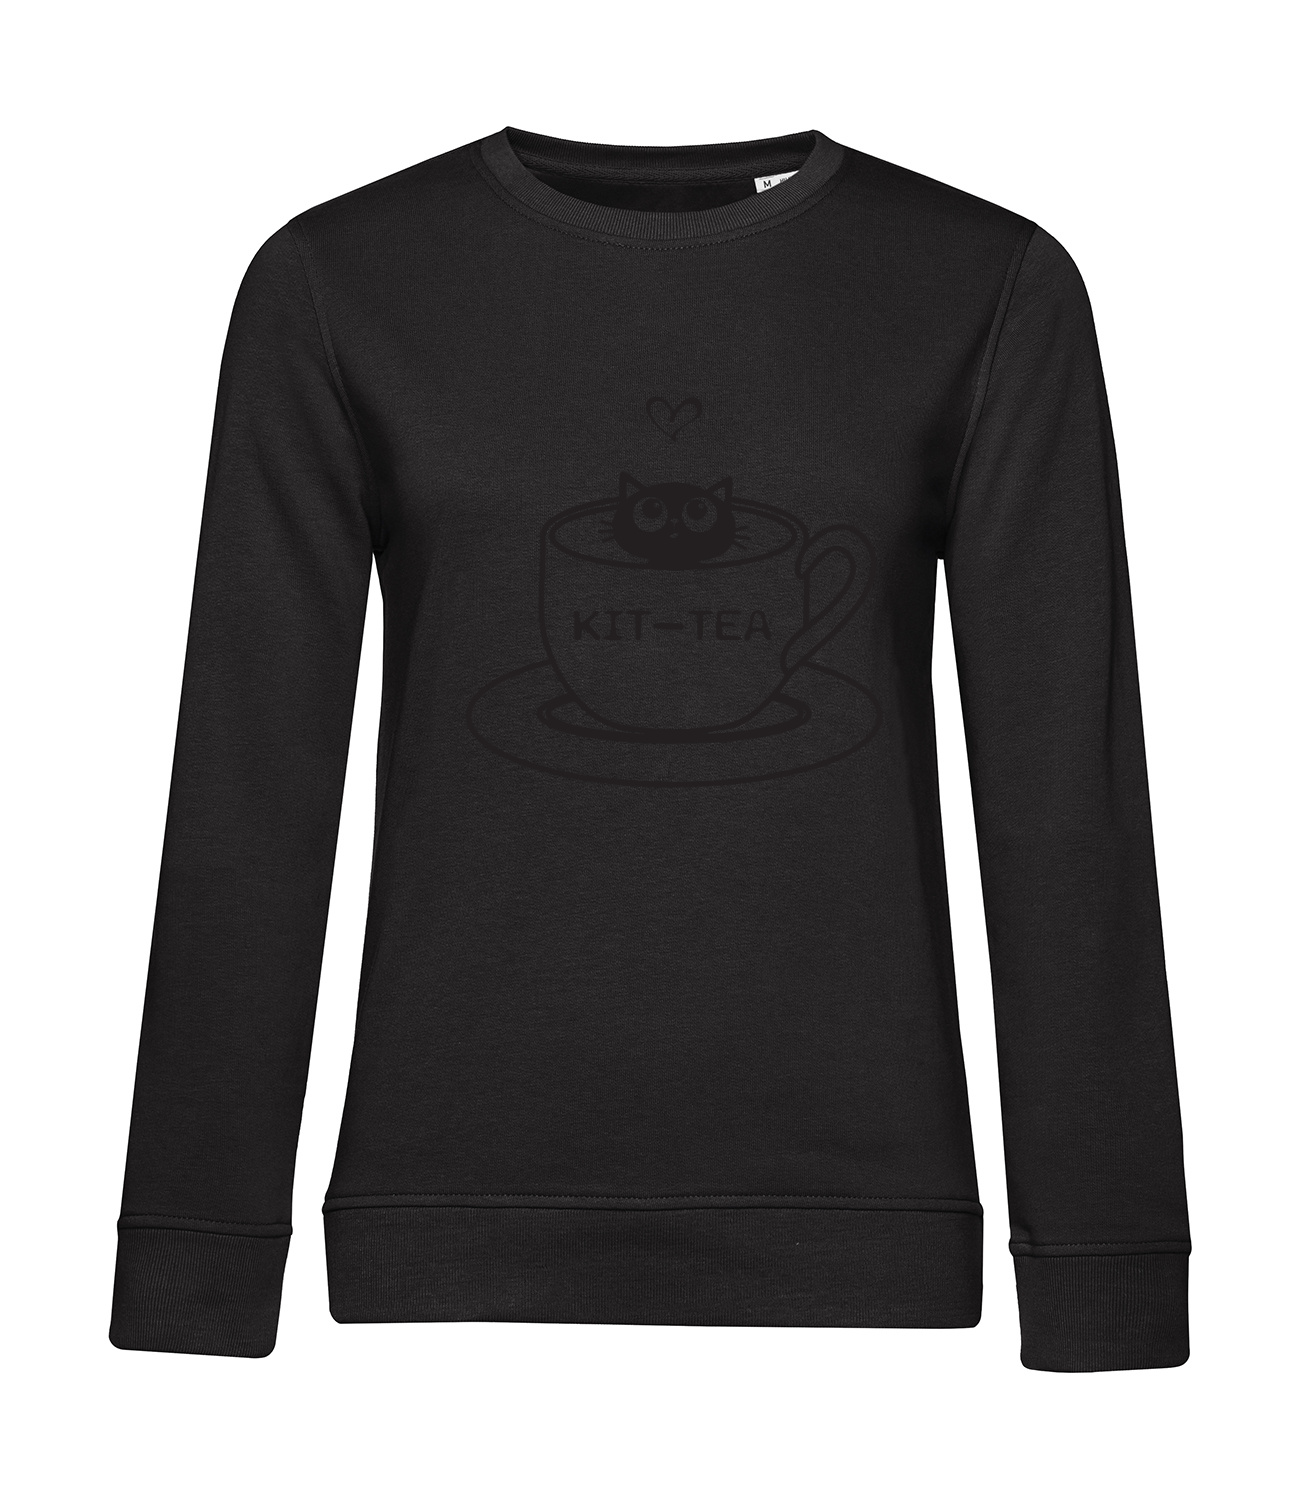 Nachhaltiges Sweatshirt Damen Katzen Kit-Tea